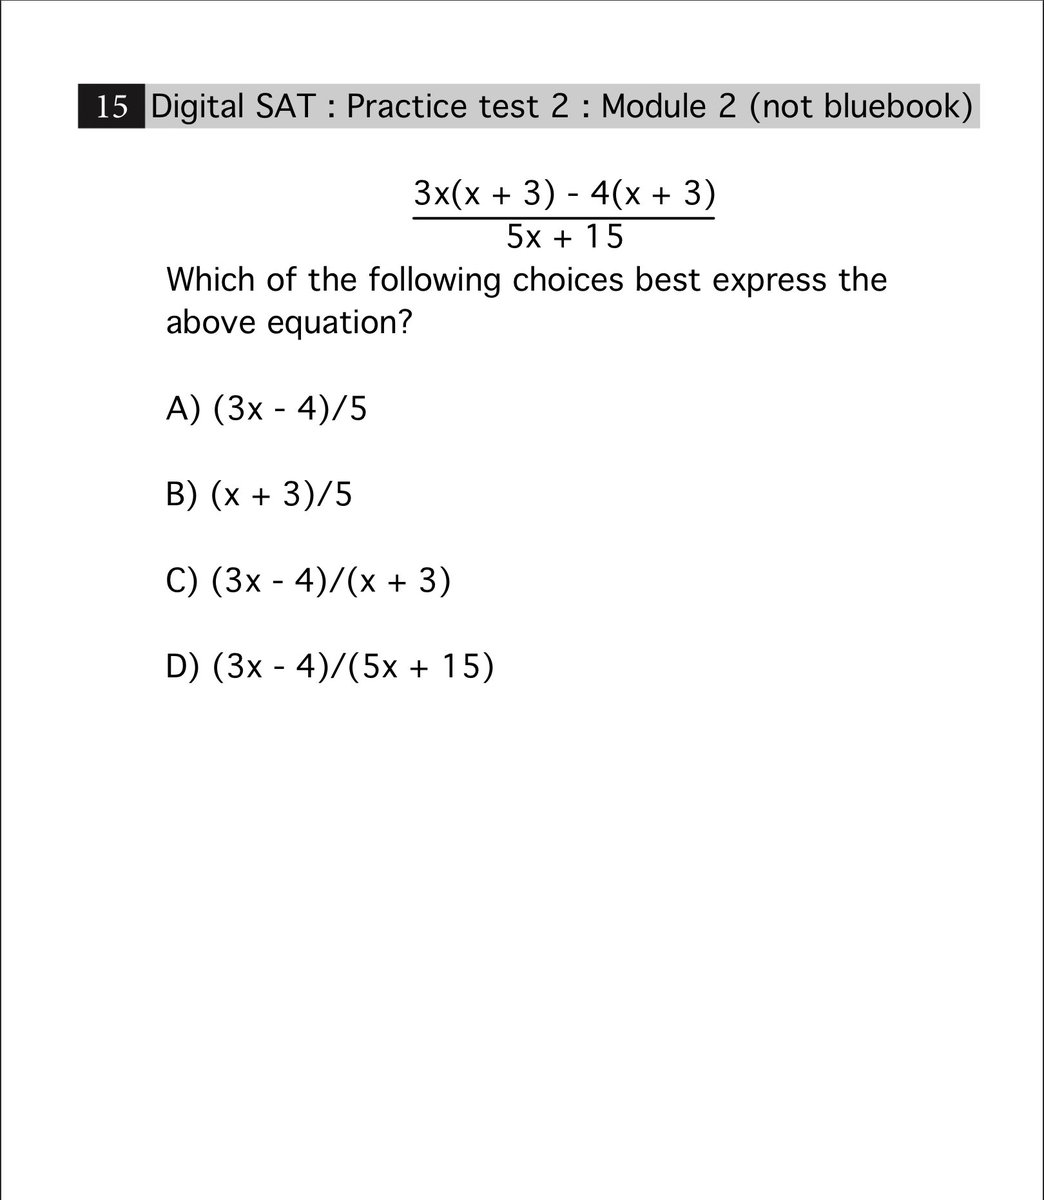 คิดเทคนิคออกมั้ย???
ปล.คลิปเฉลยออกพรุ่งนี้น้า ในreels(ig:iknowyousat)

Digital sat : Practice test 2 : Module 2 (not bluebook) : ข้อ 15

#satmath #ติวsatmath #ติวsat #digitalsat #สอบsat #สอบsatmath #ติวsatmathonline #bbatu #betu #รับสอนsat #อินเตอร์ #สอนsatmath #ติวsatverbal